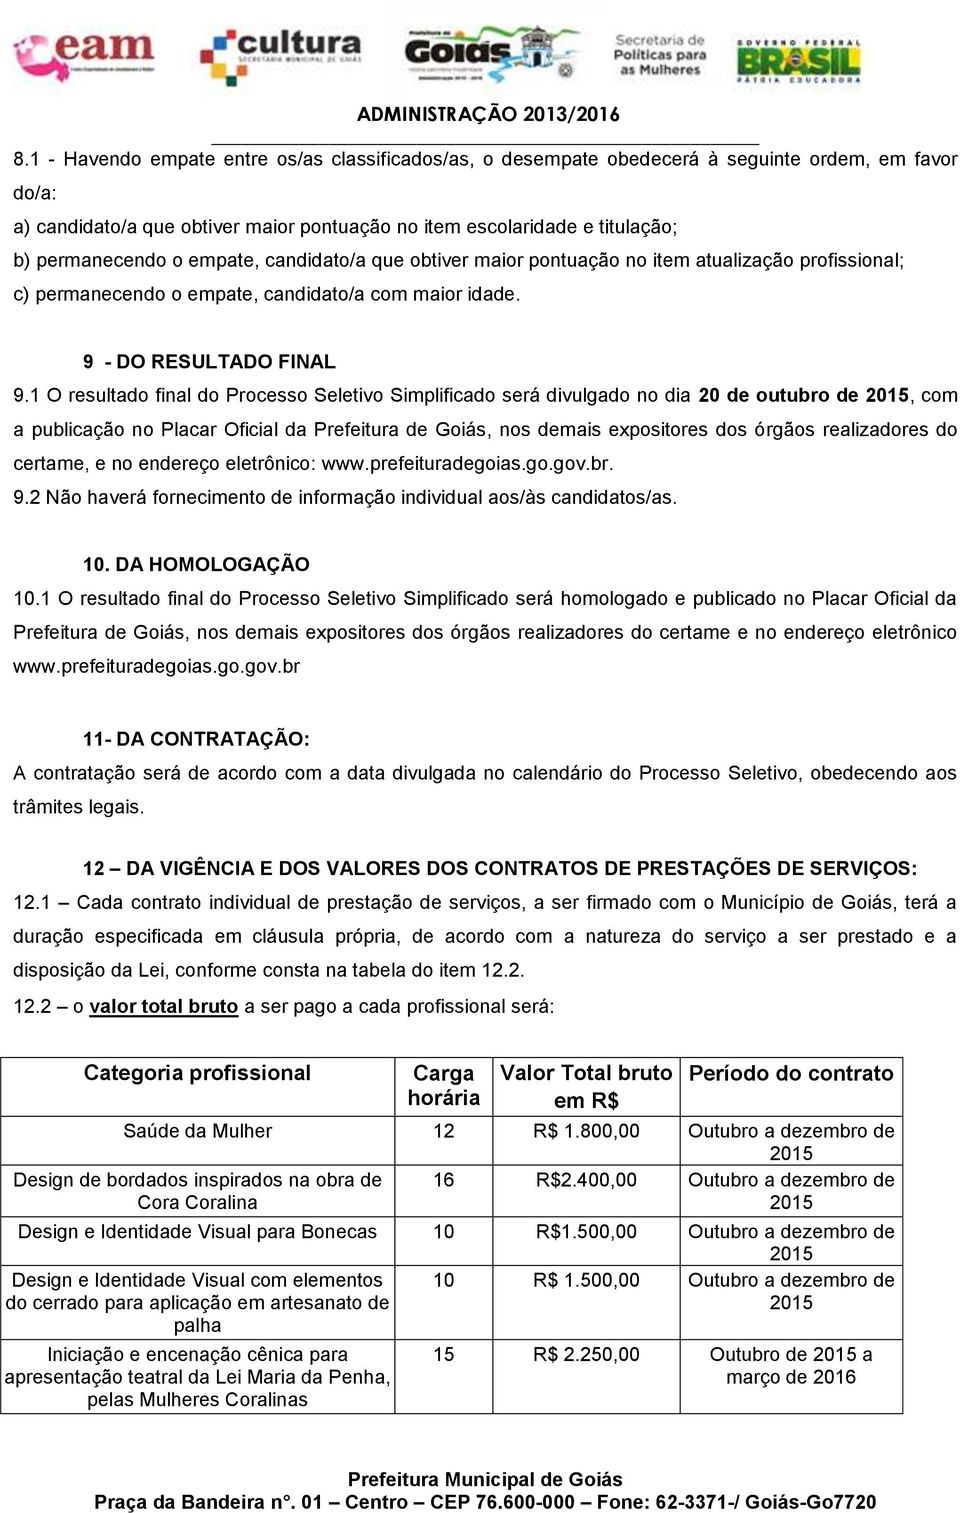 1 O resultado final do Processo Seletivo Simplificado será divulgado no dia 20 de outubro de 2015, com a publicação no Placar Oficial da Prefeitura de Goiás, nos demais expositores dos órgãos